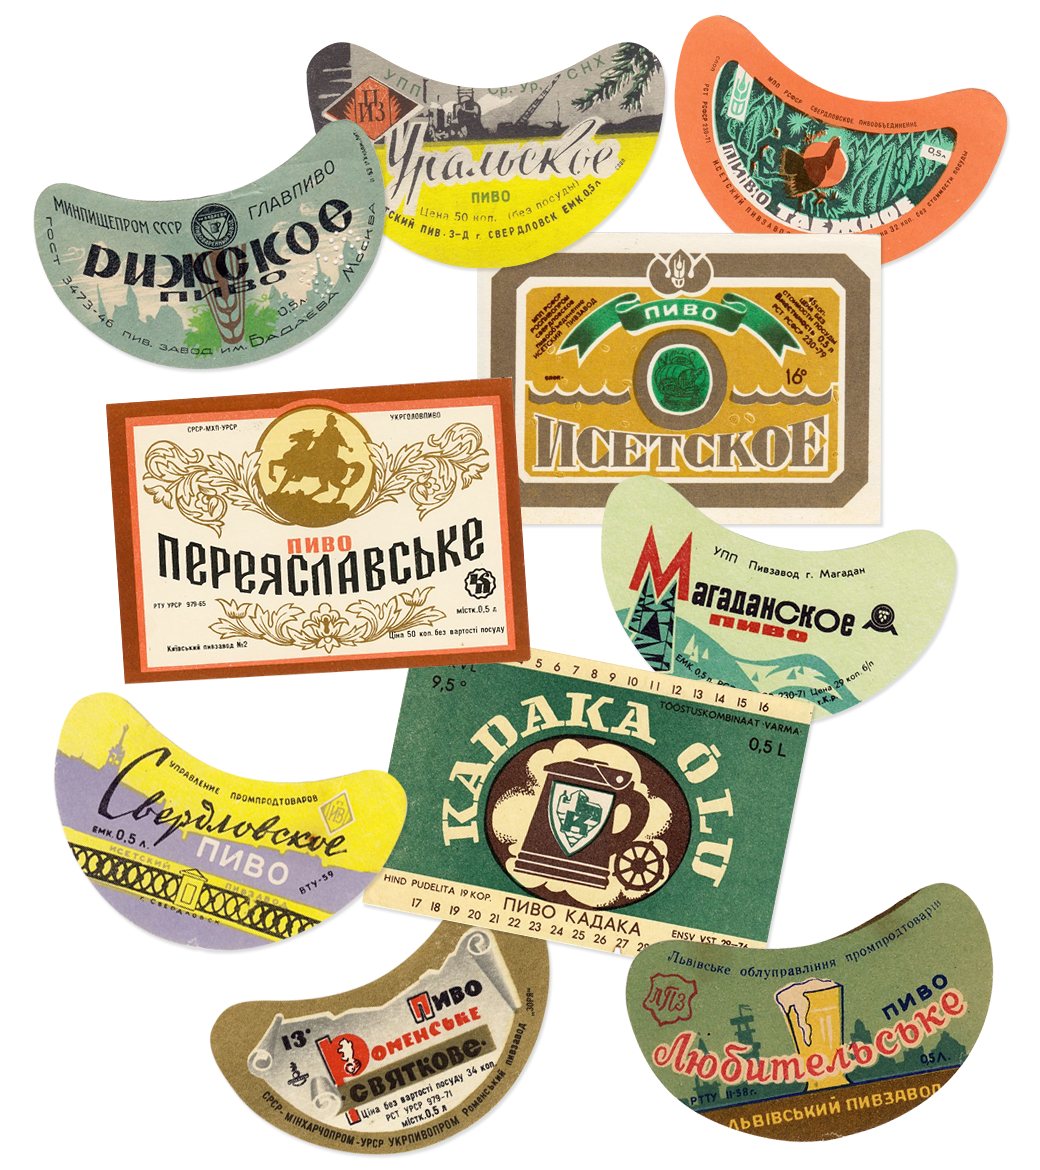 Ультимативный гид по истории советского пива. Изображение №5.